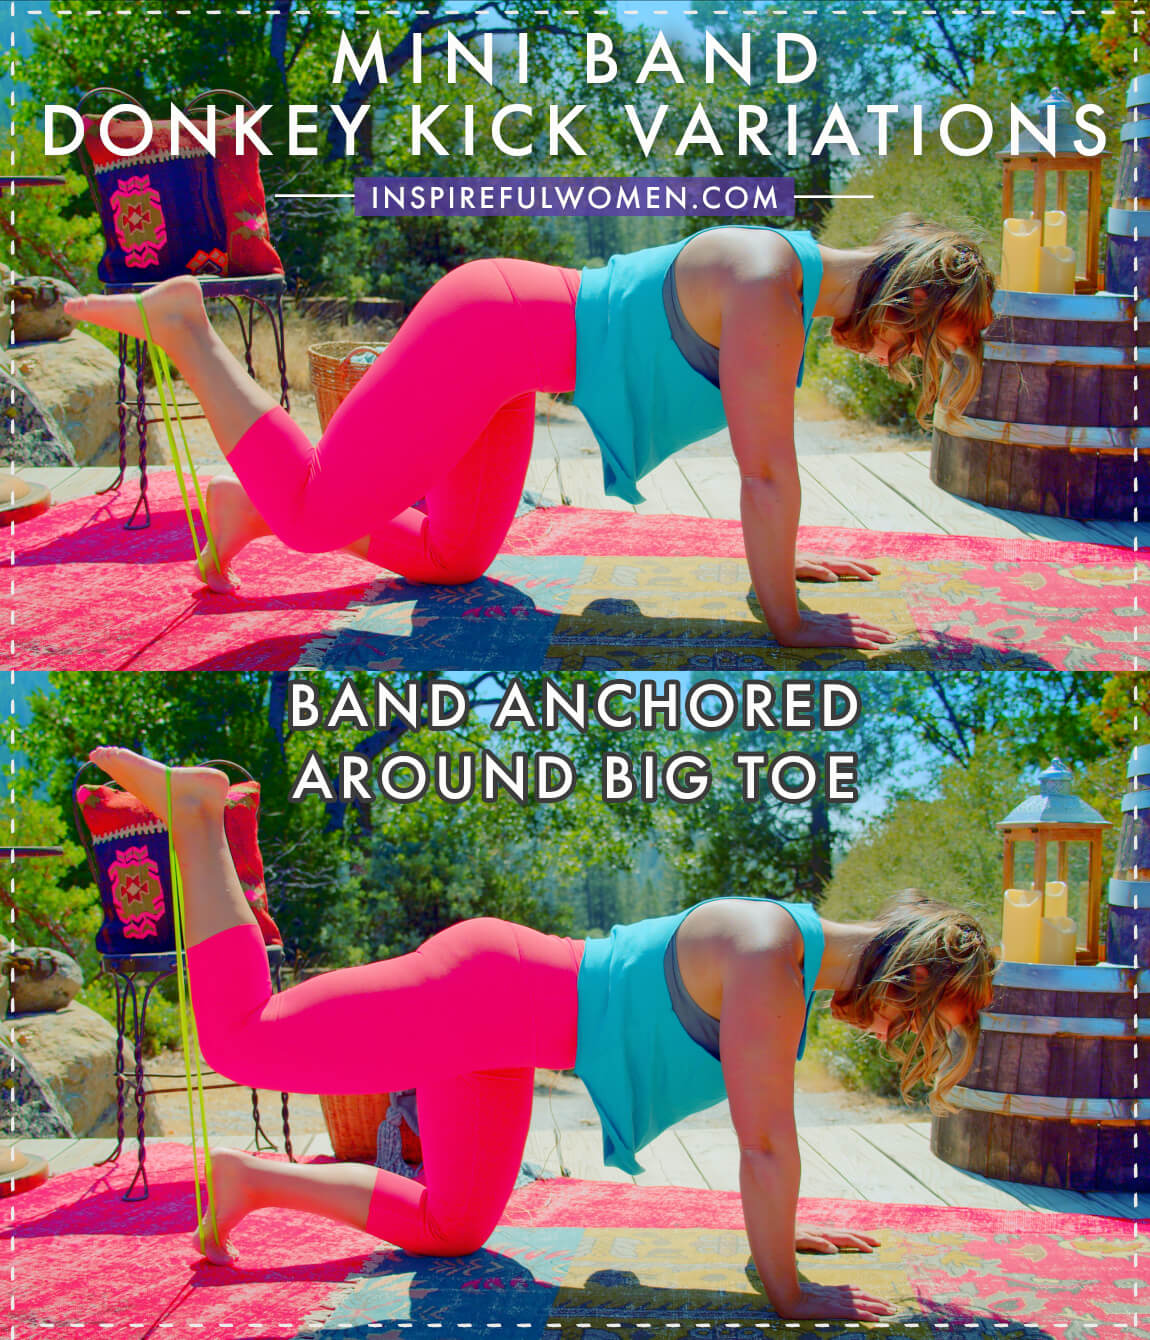 mini-band-anchored-around-big-toe-donkey-kicks-glute-exercise-variation